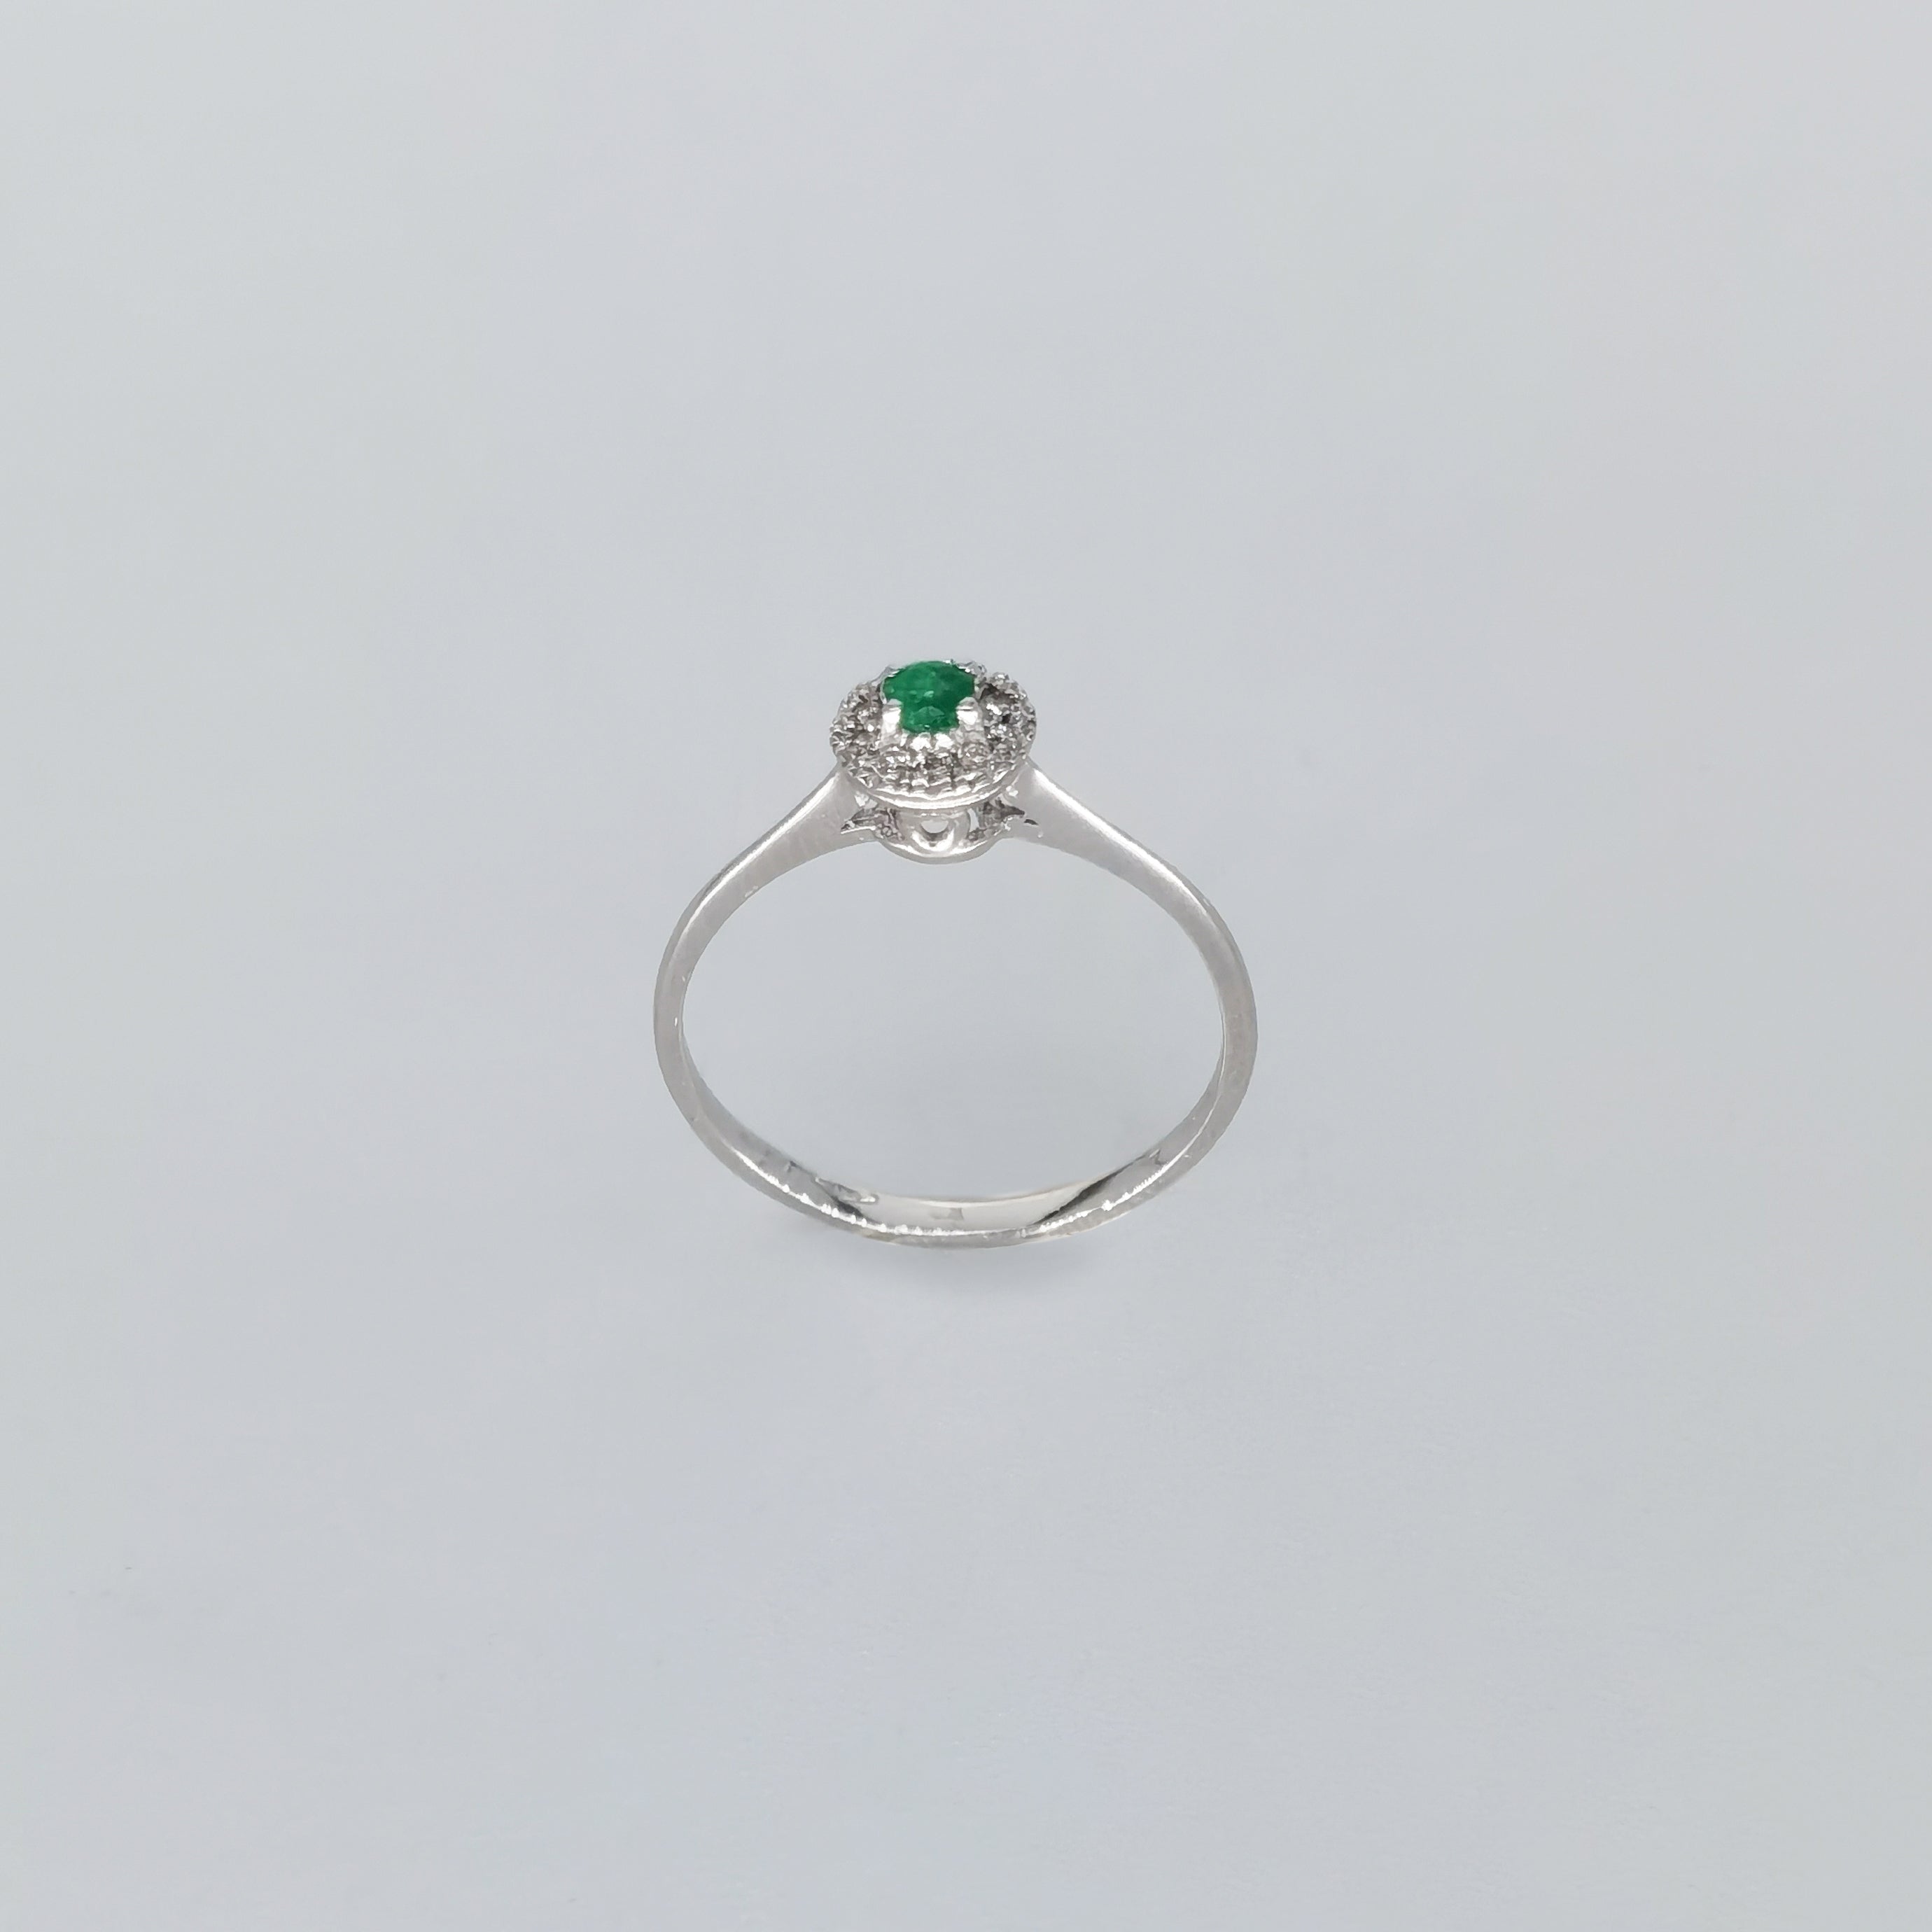 Emerald Tiara Ring with Diamonds